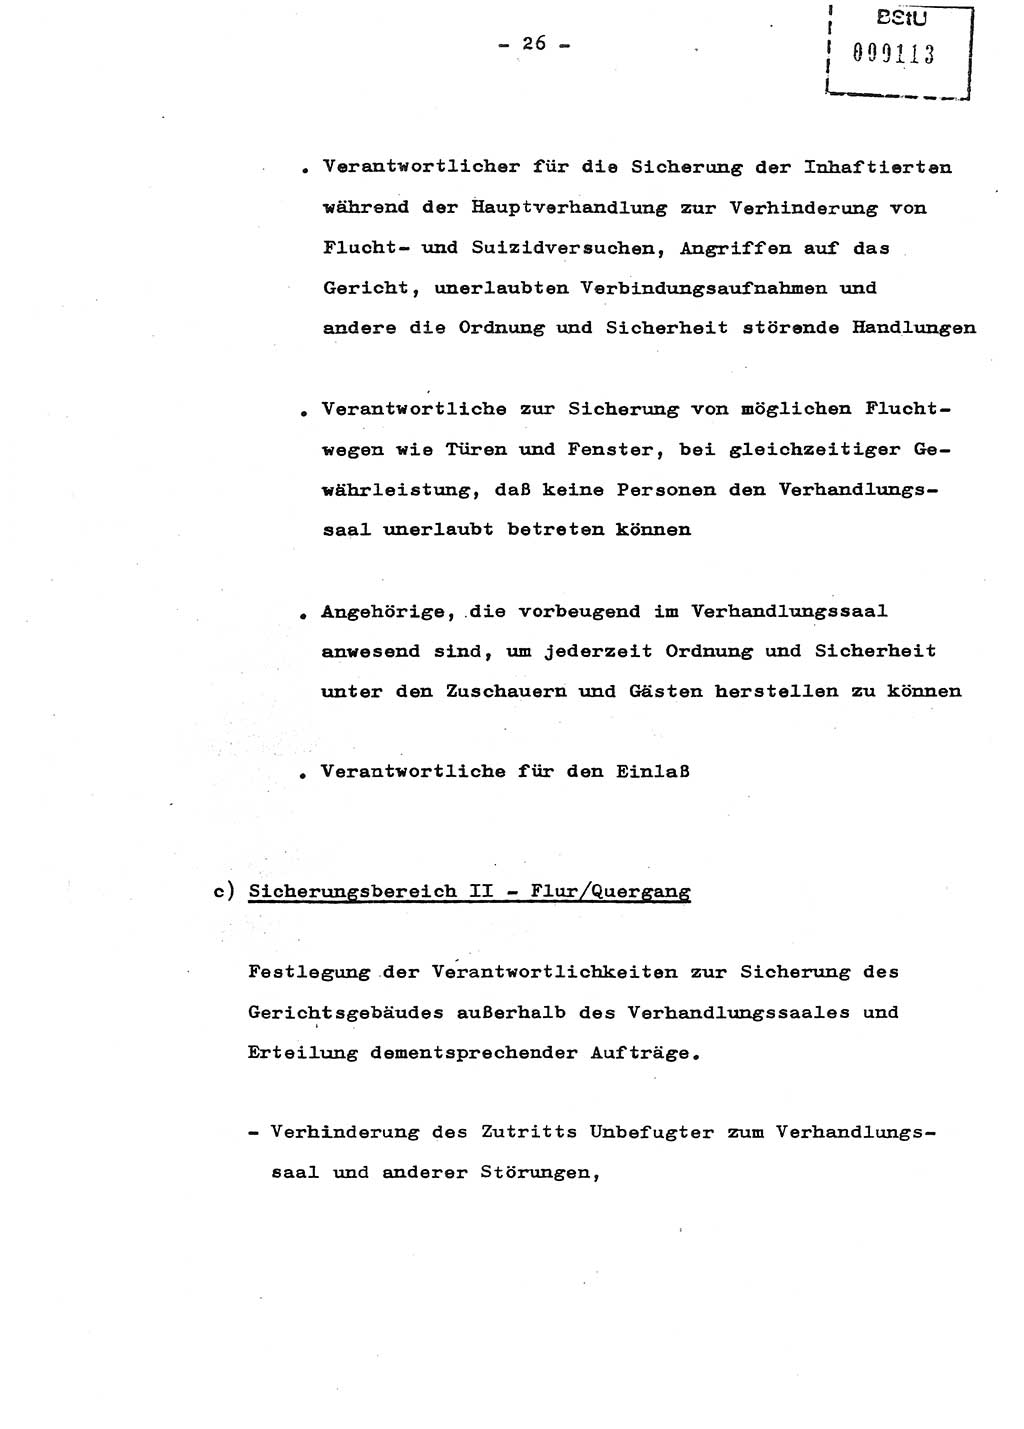 Schulungsmaterial Exemplar-Nr.: 8, Ministerium für Staatssicherheit [Deutsche Demokratische Republik (DDR)], Abteilung (Abt.) ⅩⅣ, Berlin 1987, Seite 26 (Sch.-Mat. Expl. 8 MfS DDR Abt. ⅩⅣ /87 1987, S. 26)